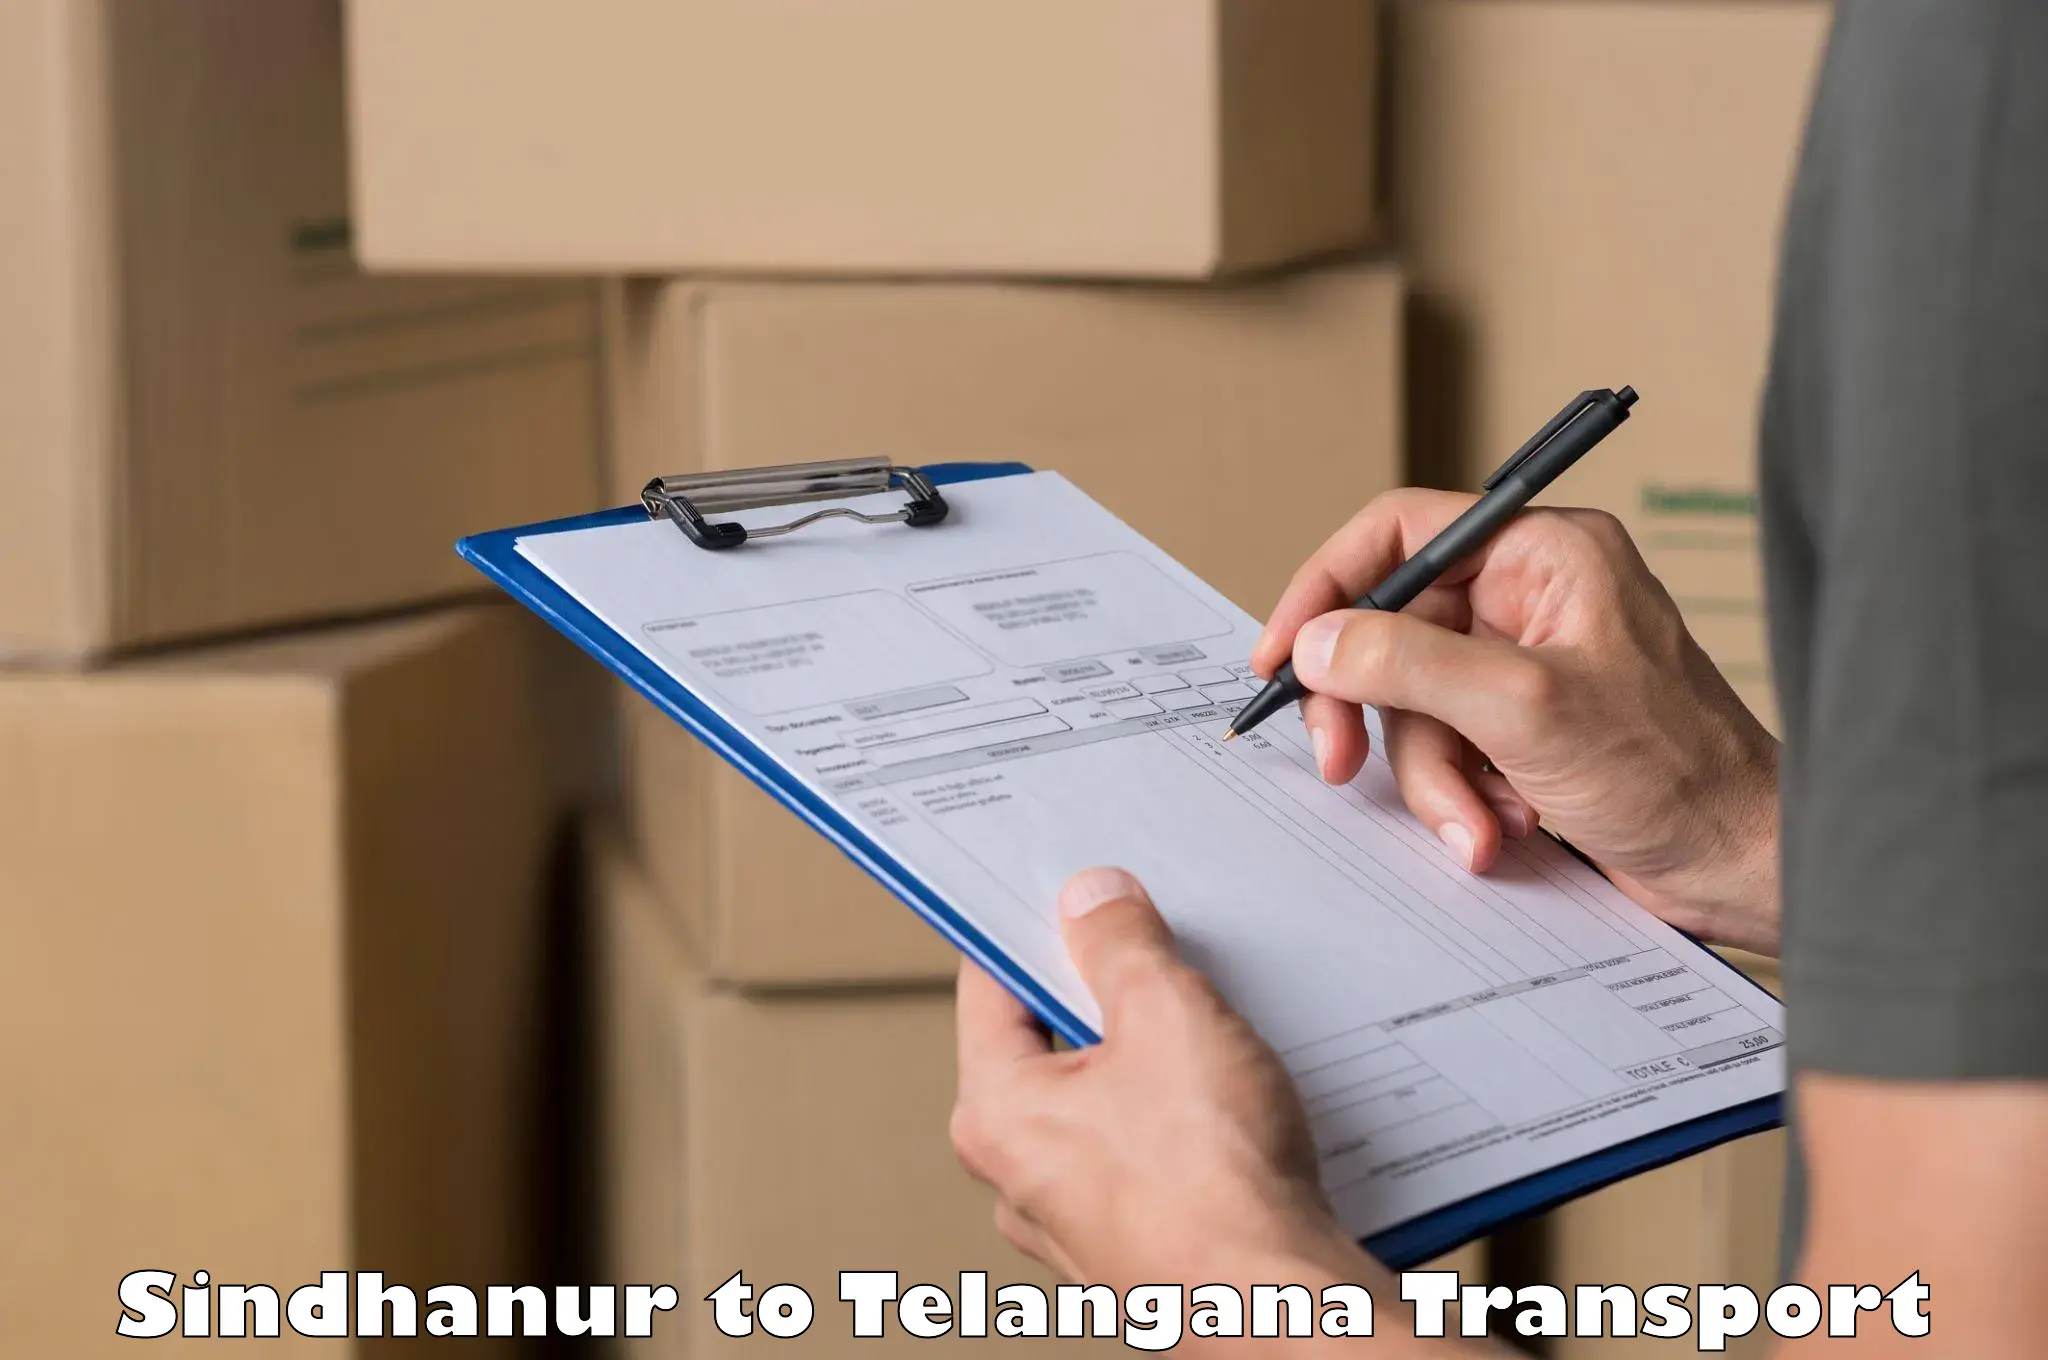 International cargo transportation services Sindhanur to Telangana